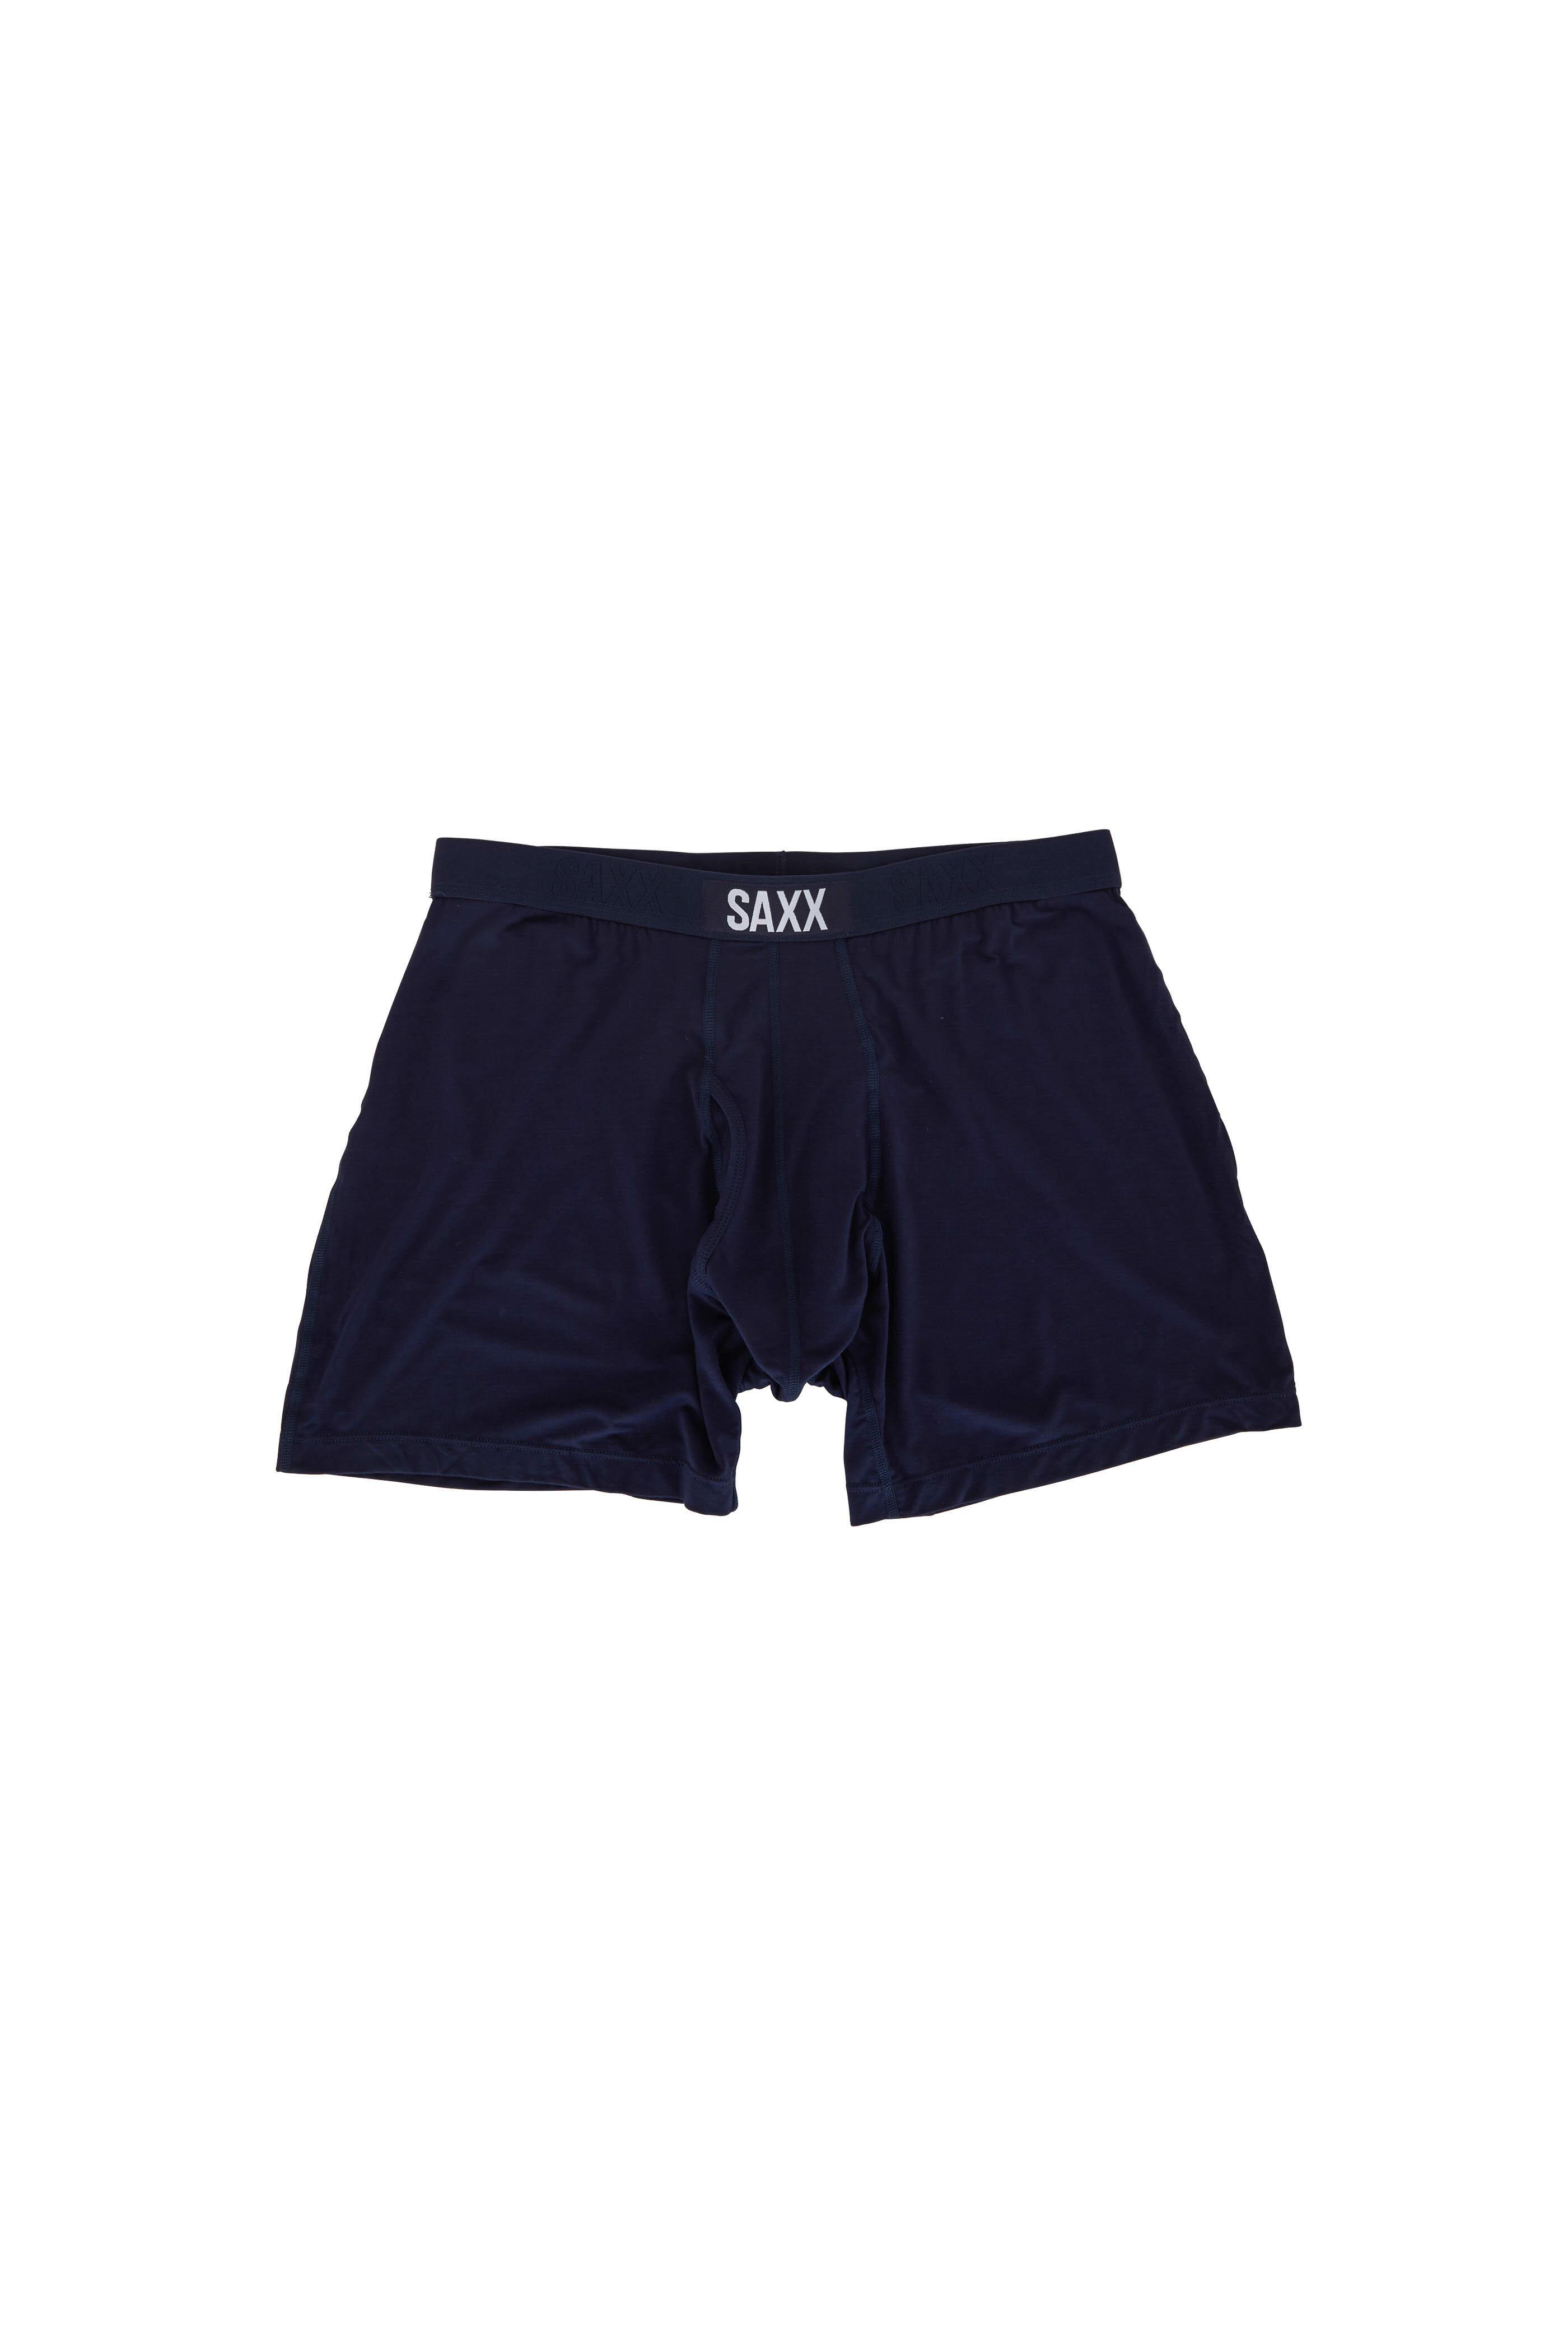 Saxx Underwear - Vibe Navy Boxer Brief | Mitchell Stores